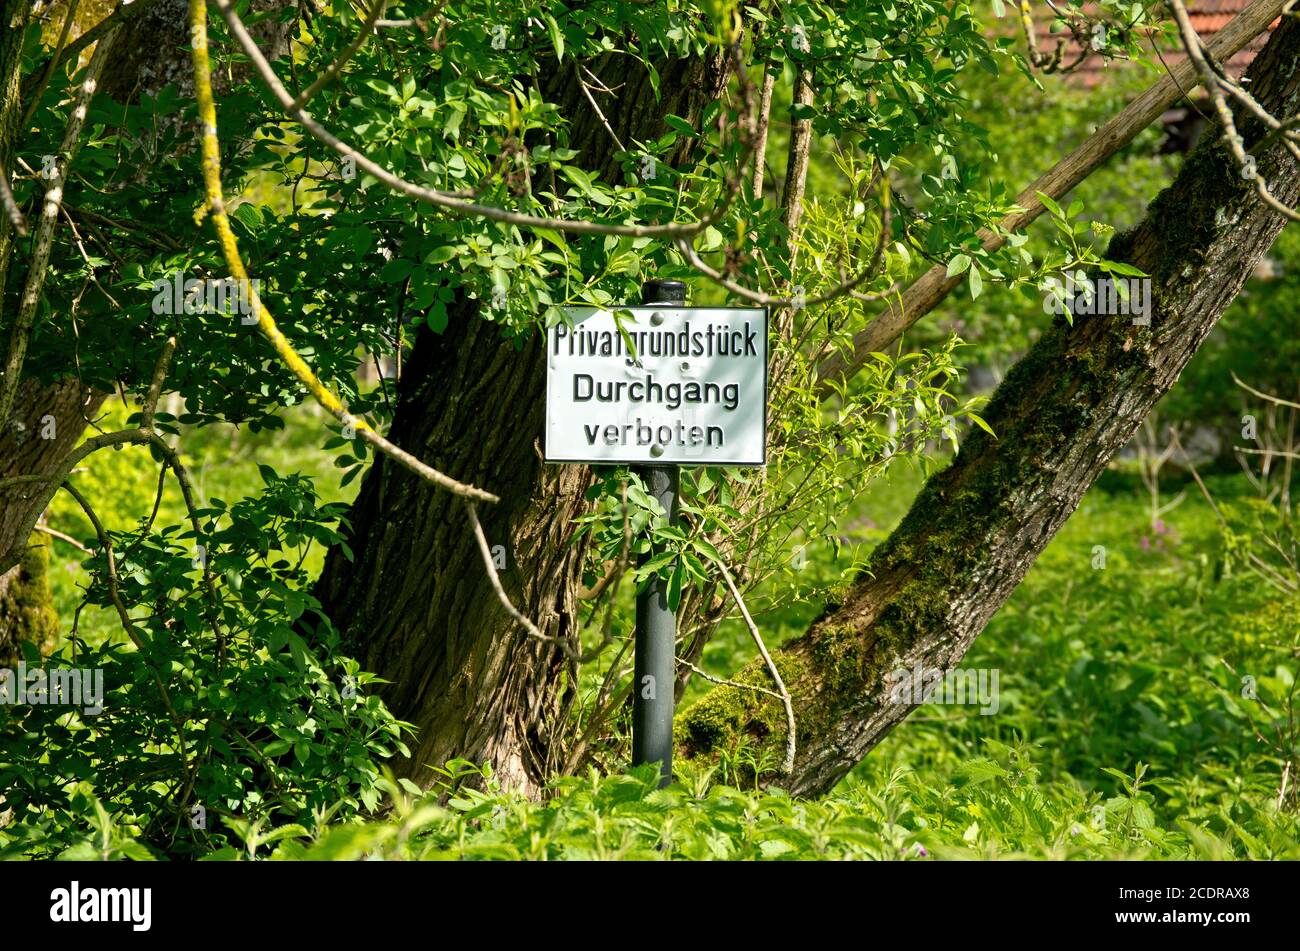 Anmeldung in deutscher Sprache vor einem bewachsenen Grundstück - Privateigentum - keine Passage (Privatgrundstück Durchgang verboten). Stockfoto